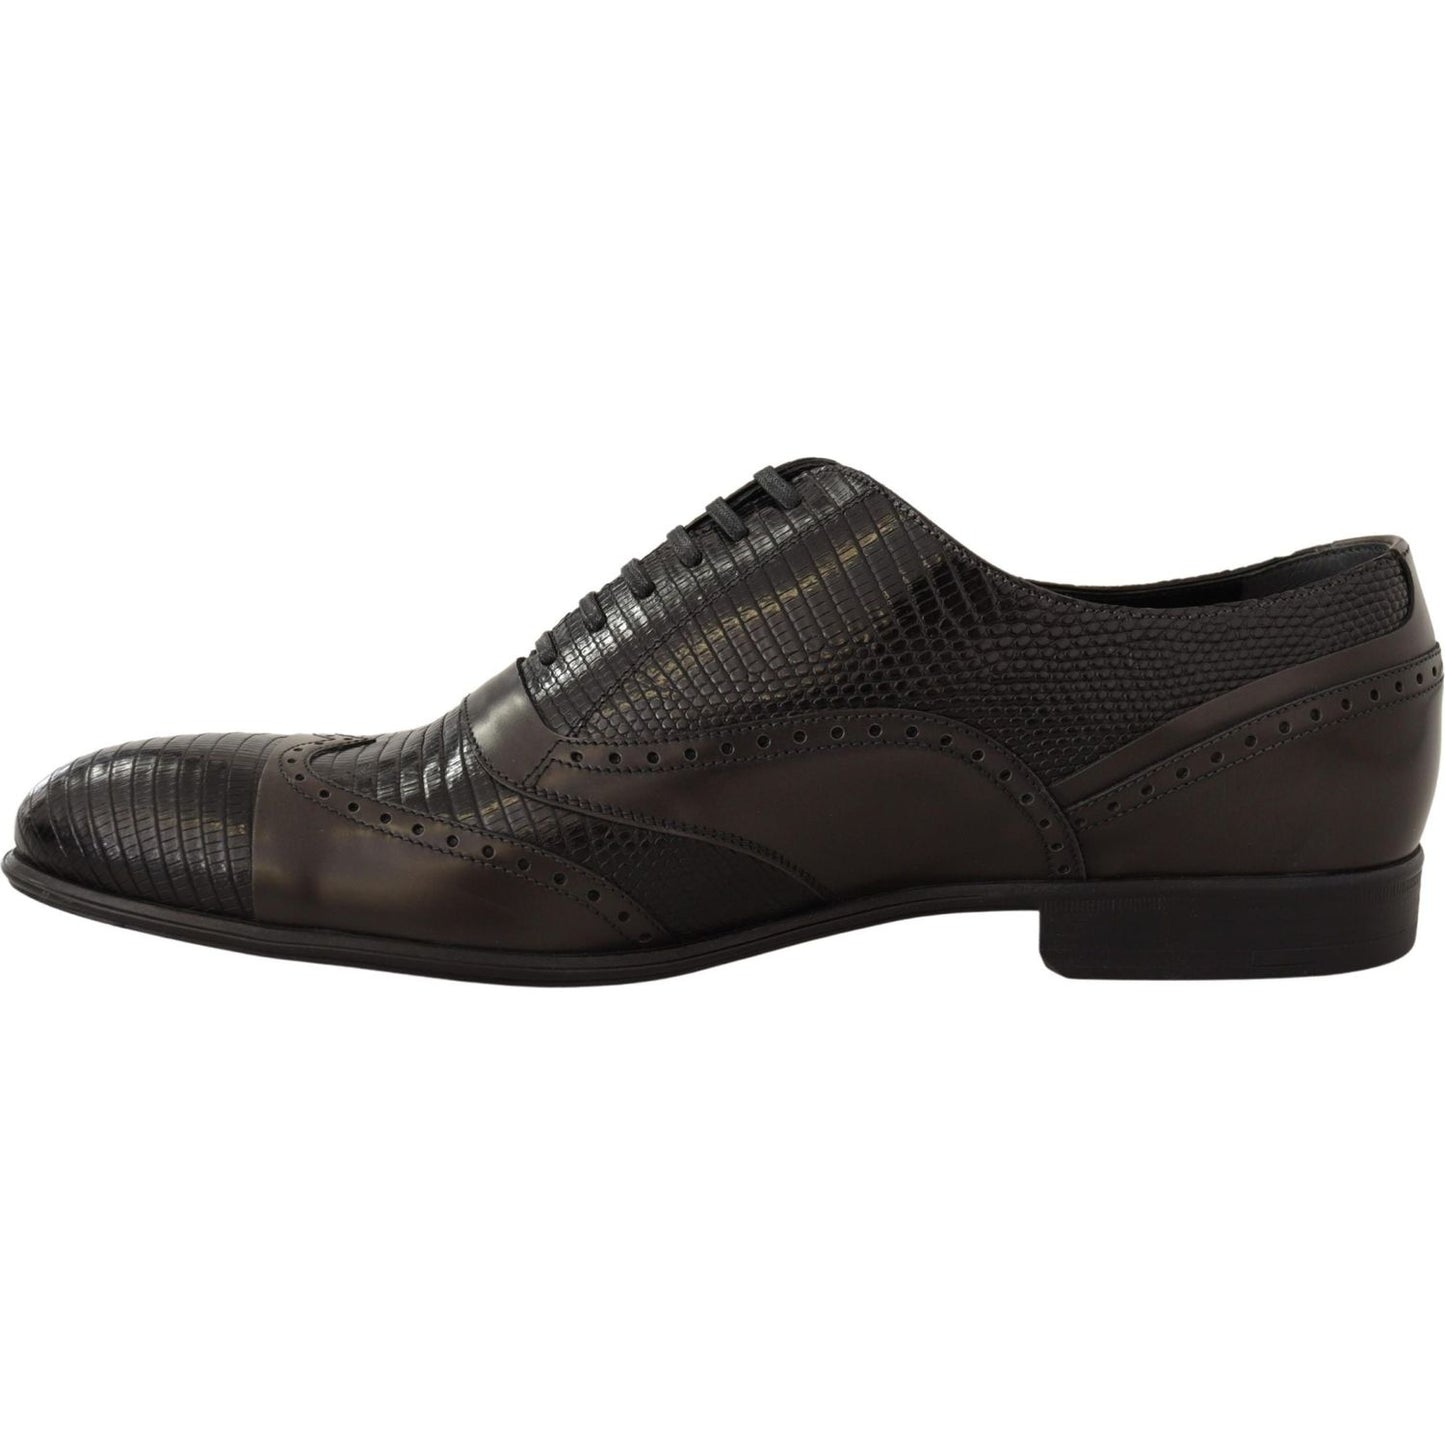 Dolce & Gabbana Elegant Brown Lizard Leather Oxford Shoes brown-lizard-skin-leather-oxford-dress-shoes Dress Shoes IMG_9979-scaled-13e196b9-4e2.jpg